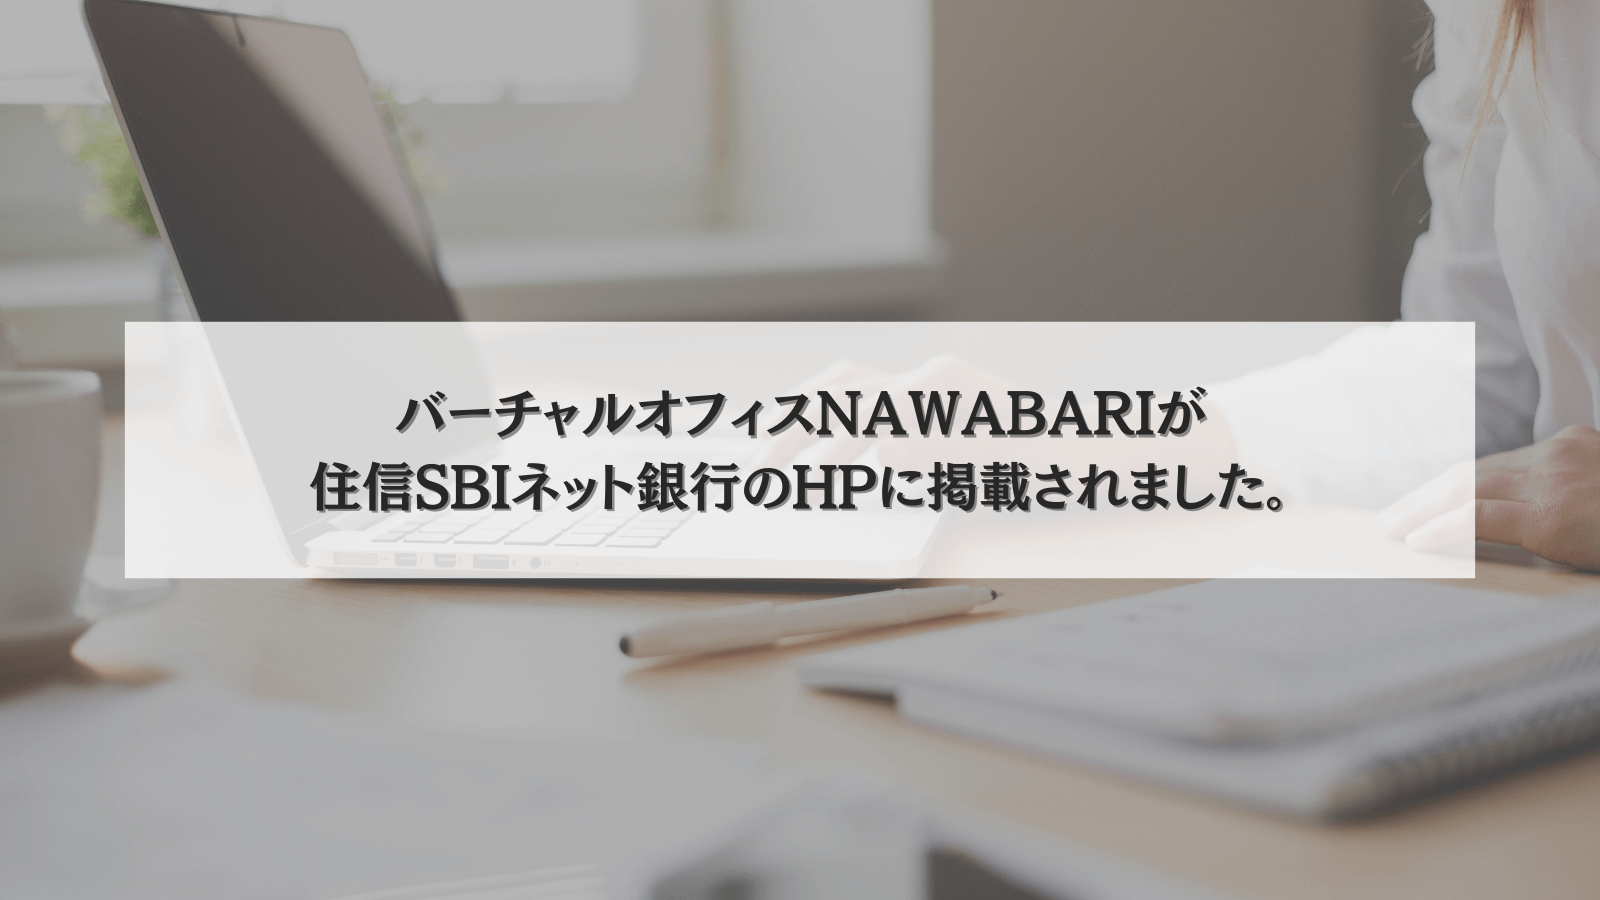 NAWABARIが住信SBIネット銀行のHPに掲載いただきました。